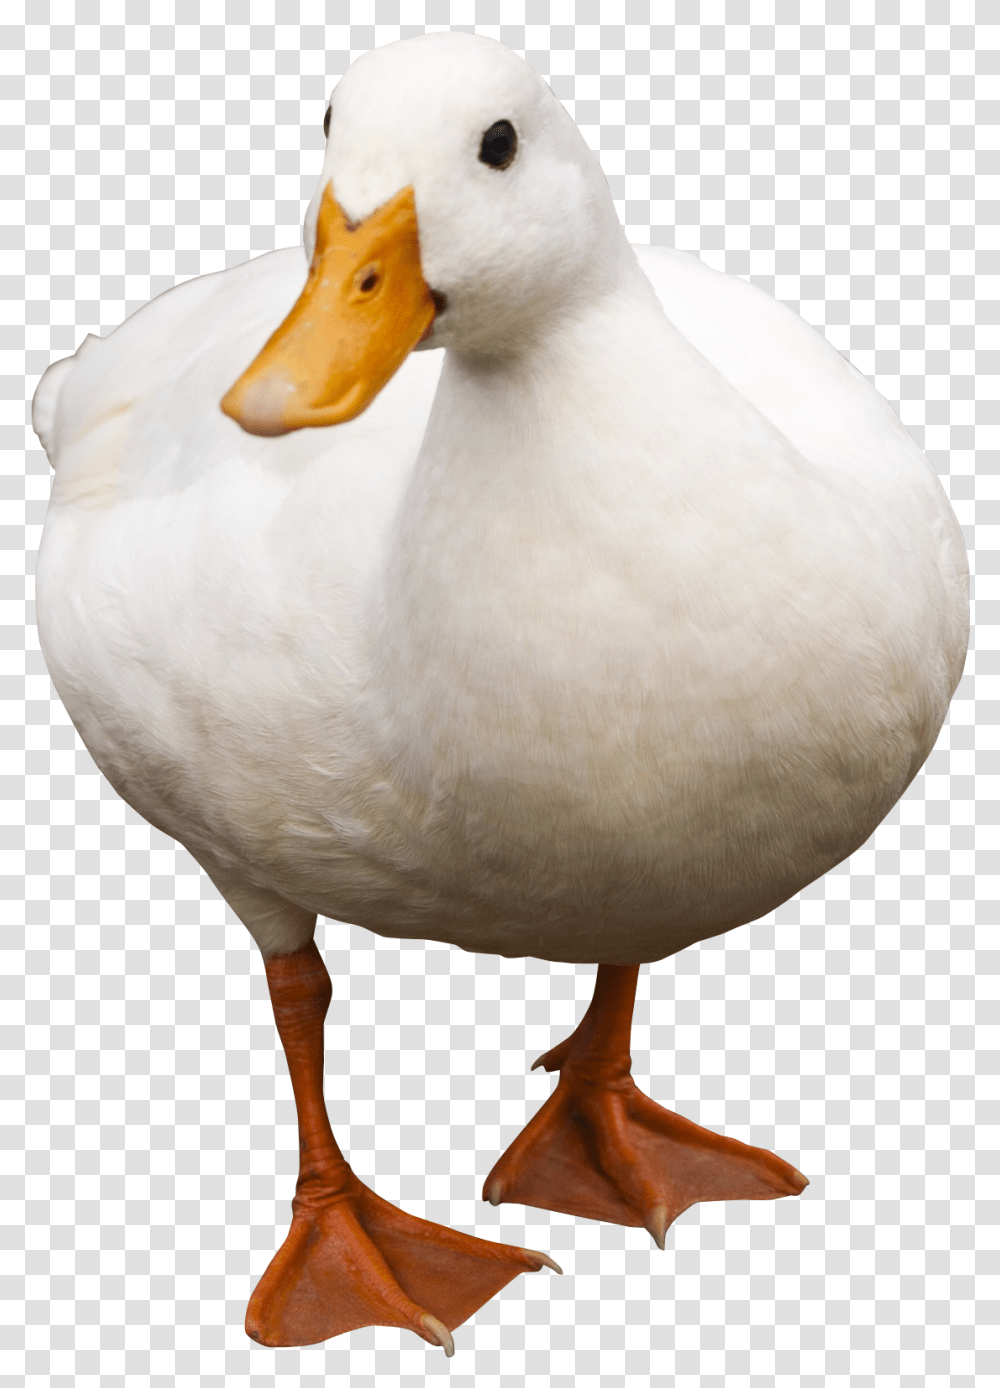 Download Duck Walking Image For Free Duck, Bird, Animal, Beak, Waterfowl Transparent Png